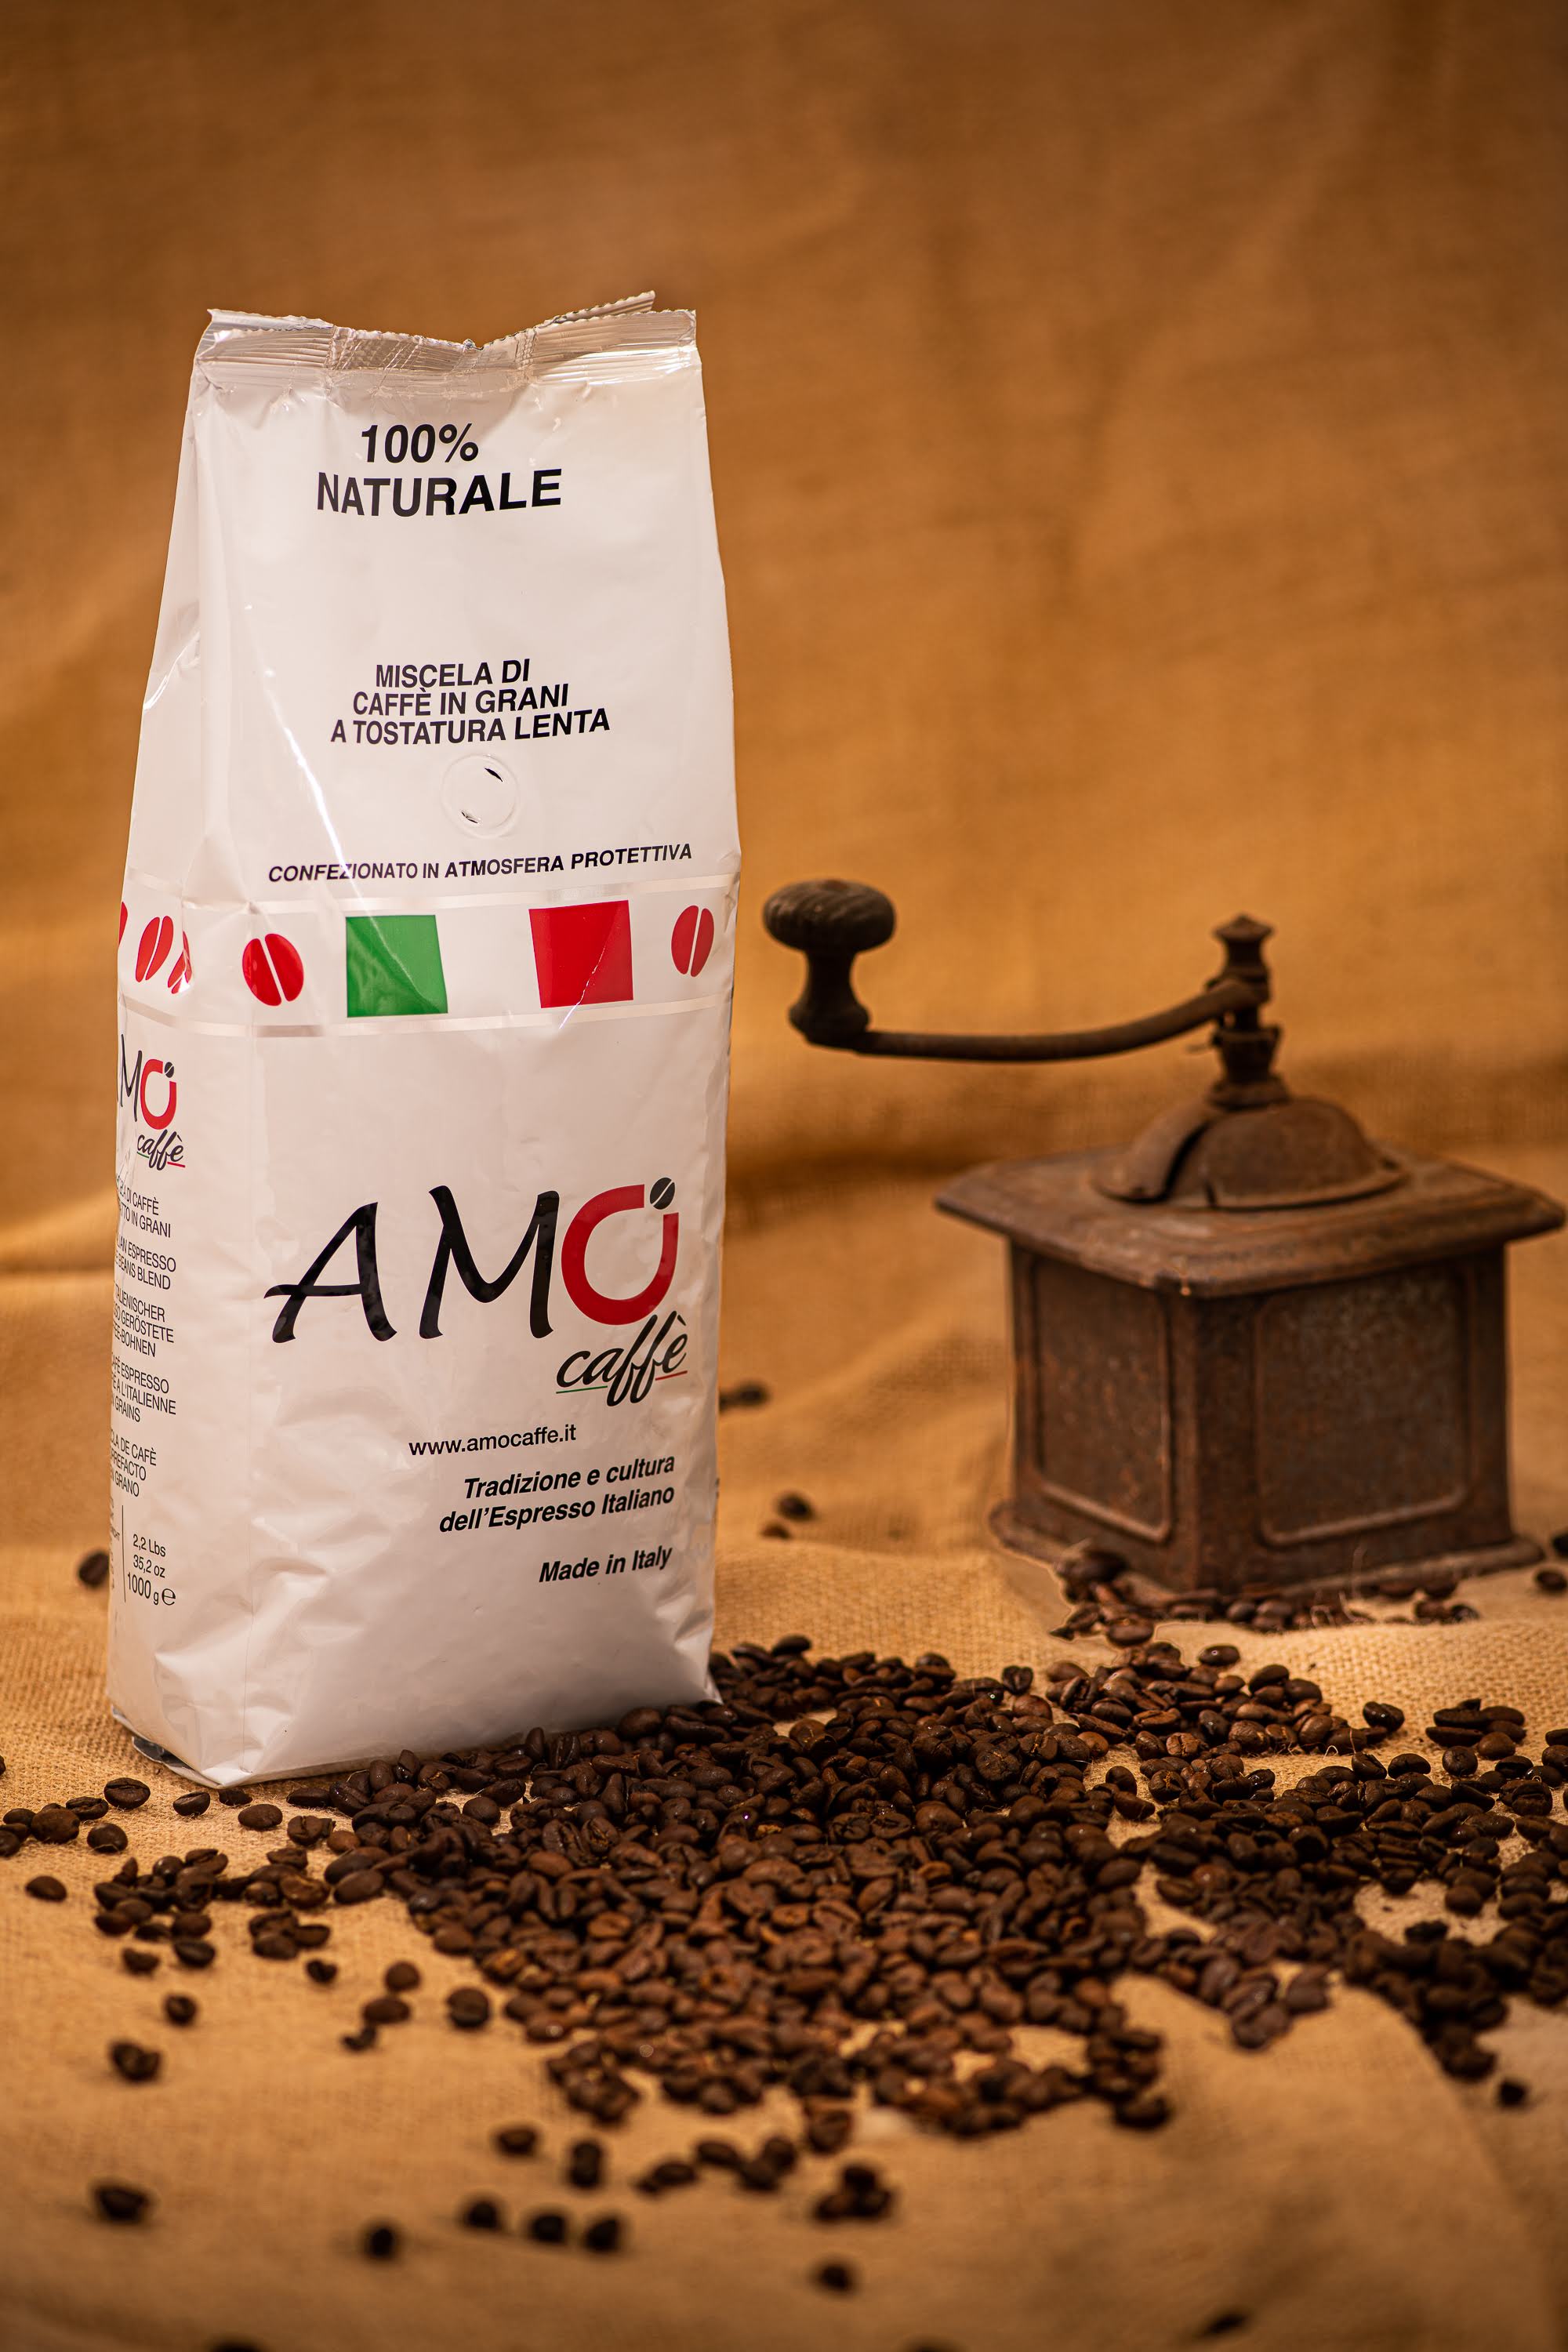 AMO CAFFE MISCELA ROSSO CREMOSO - MISCELA DI CAFFE IN GRANI A TOSTATURA LENTA